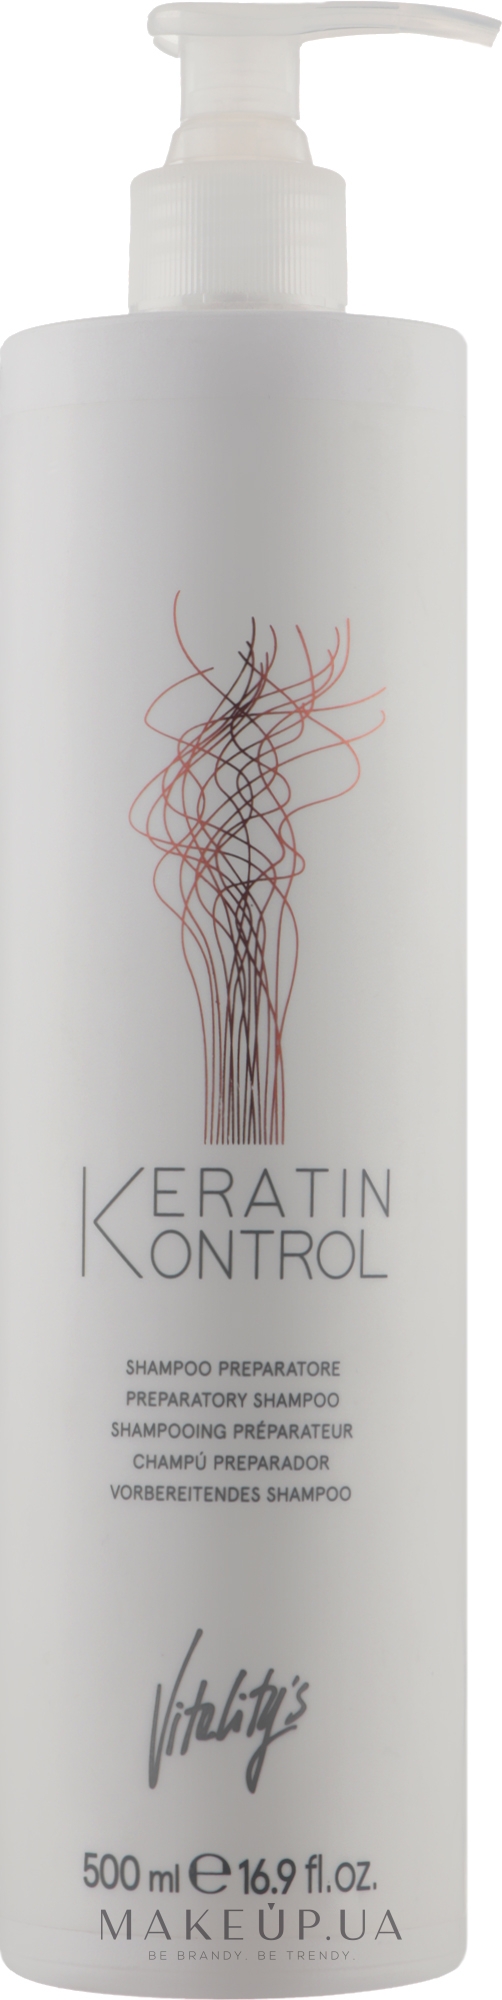 Подготовительный шампунь для волос - Vitality's Keratin Kontrol Preparatory Shampoo — фото 500ml